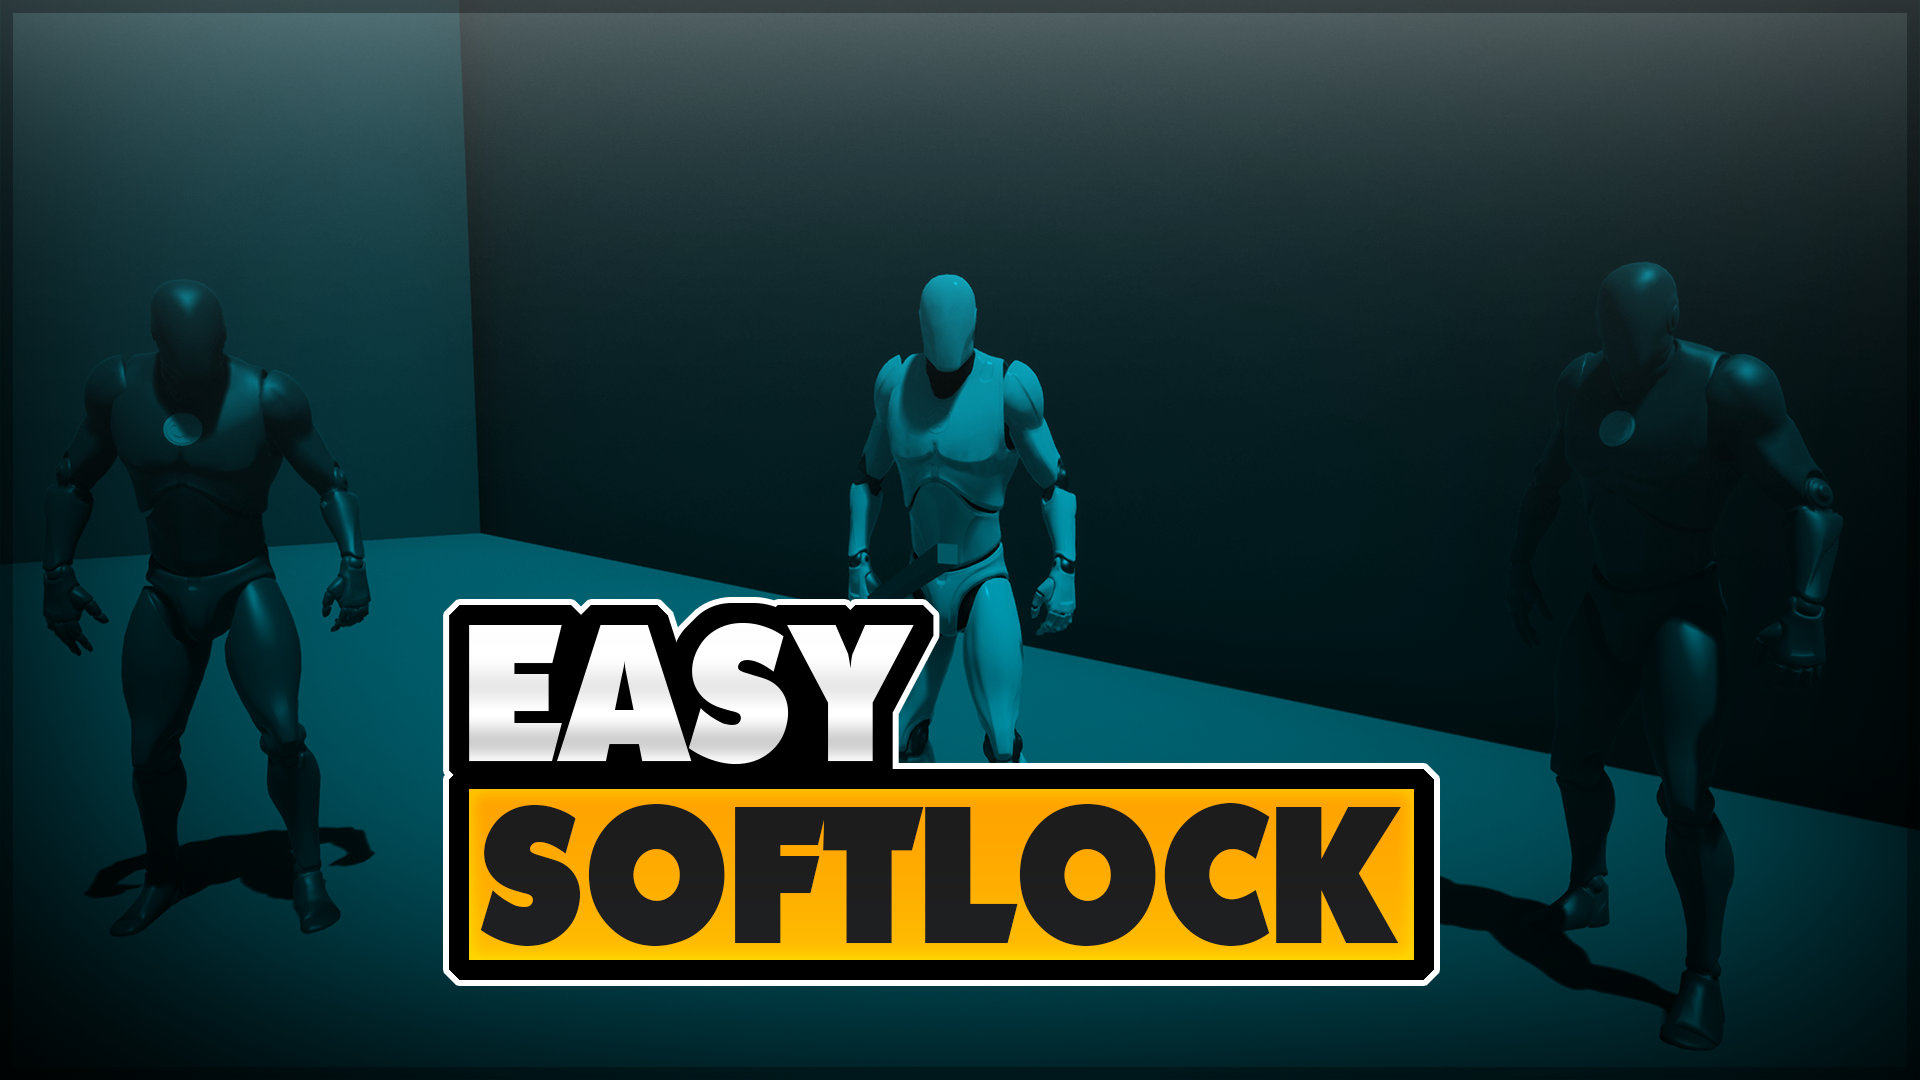 UE4 - Easy Combat Softlock